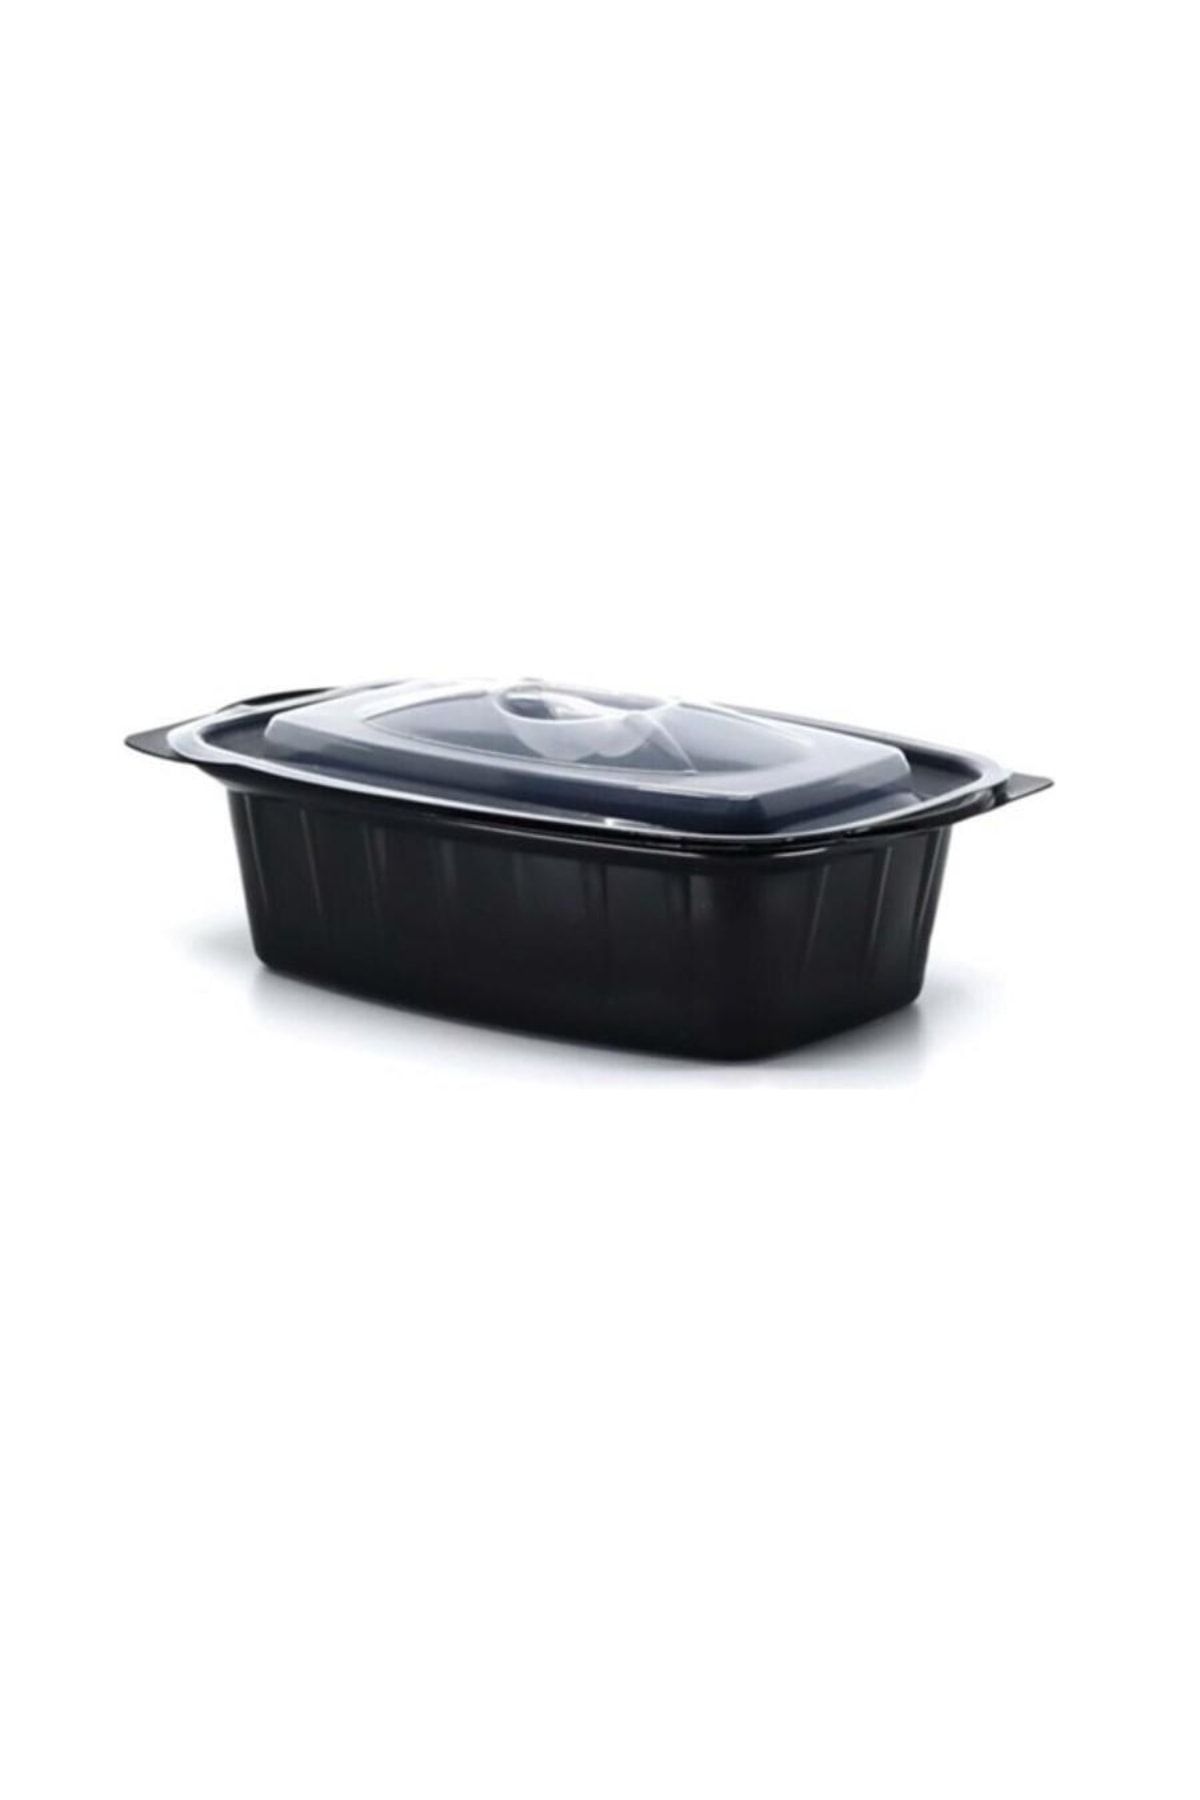 Özge Plastik Sıcak Yemek Kabı Kapaklı Siyah 750 gr. Kap + Kapak